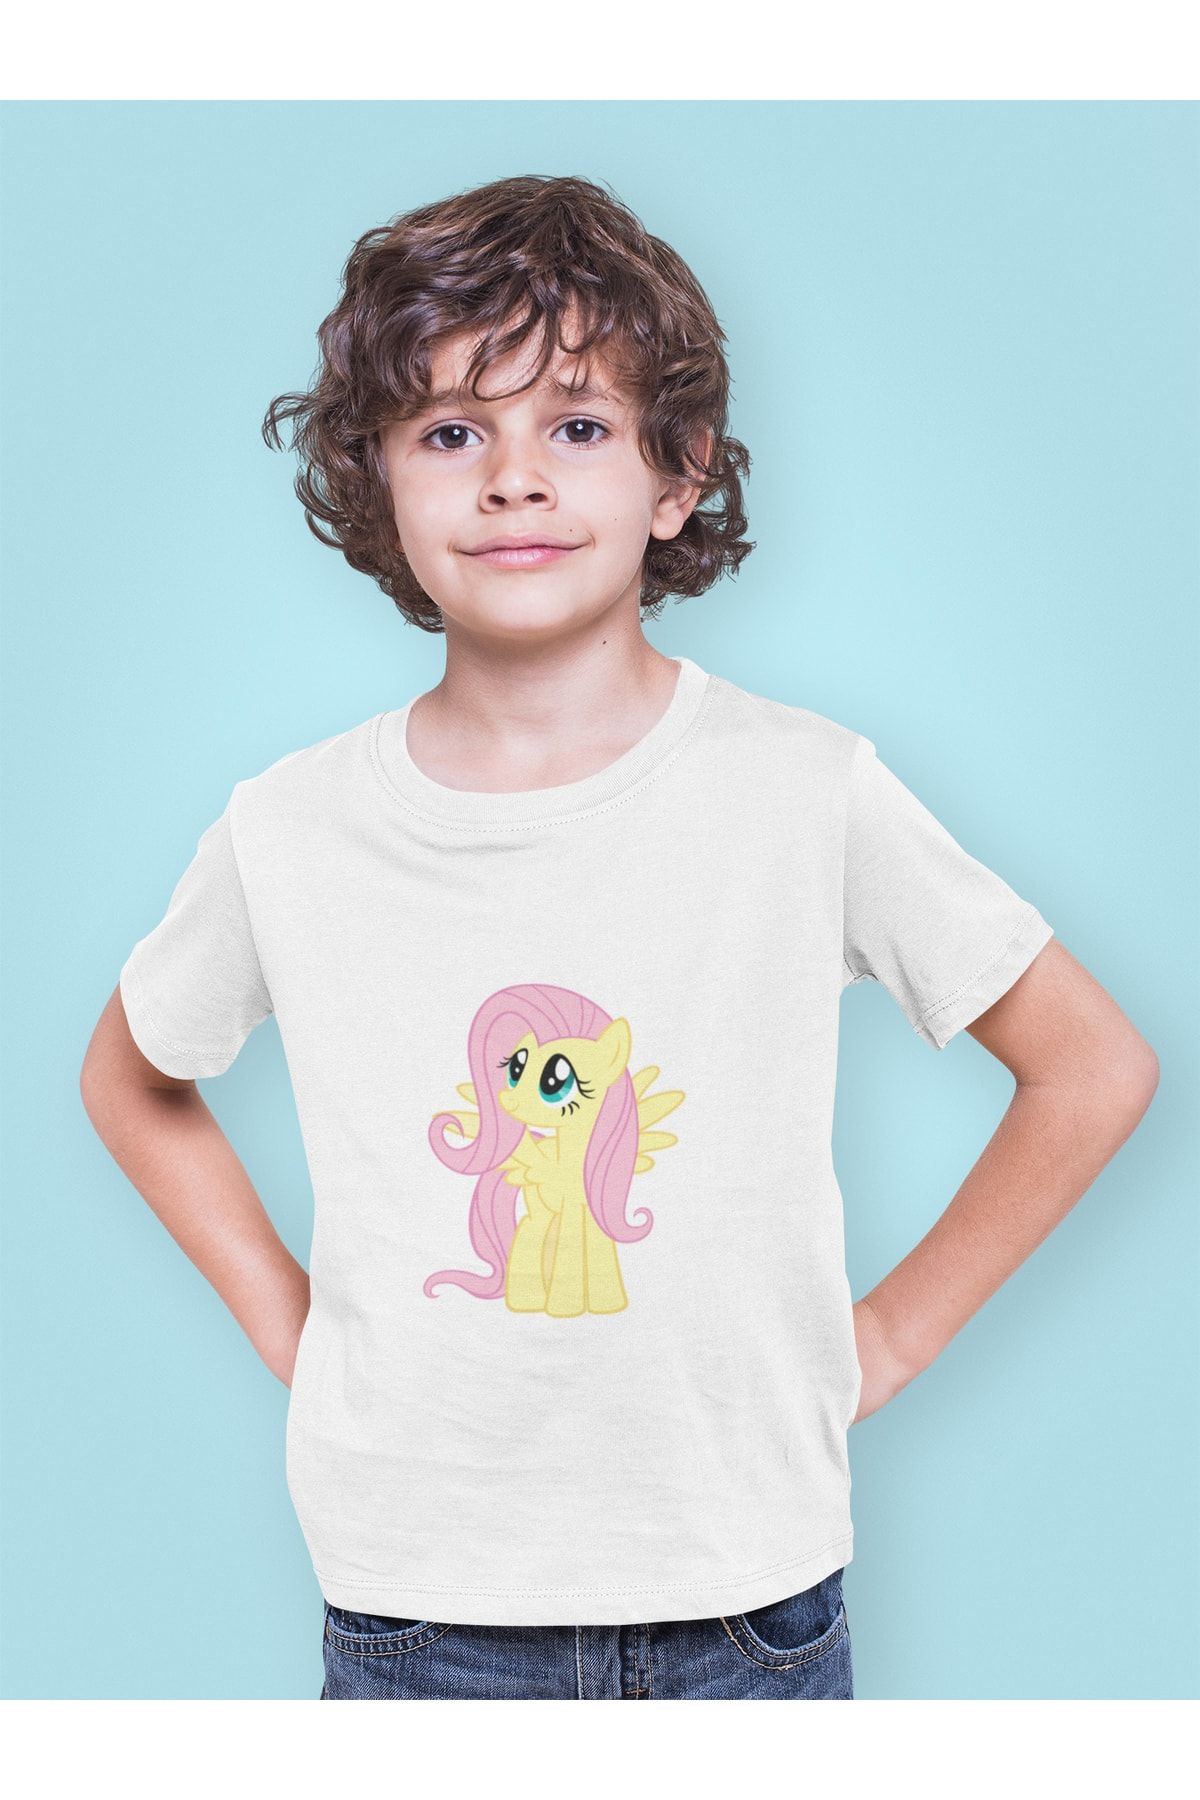 Kio Tasarım My Little Pony Fluttershy Baskılı Tişört Erkek Sevgiliye Arkadaşa Hediye Doğum Günü Hediyesi T-shirt